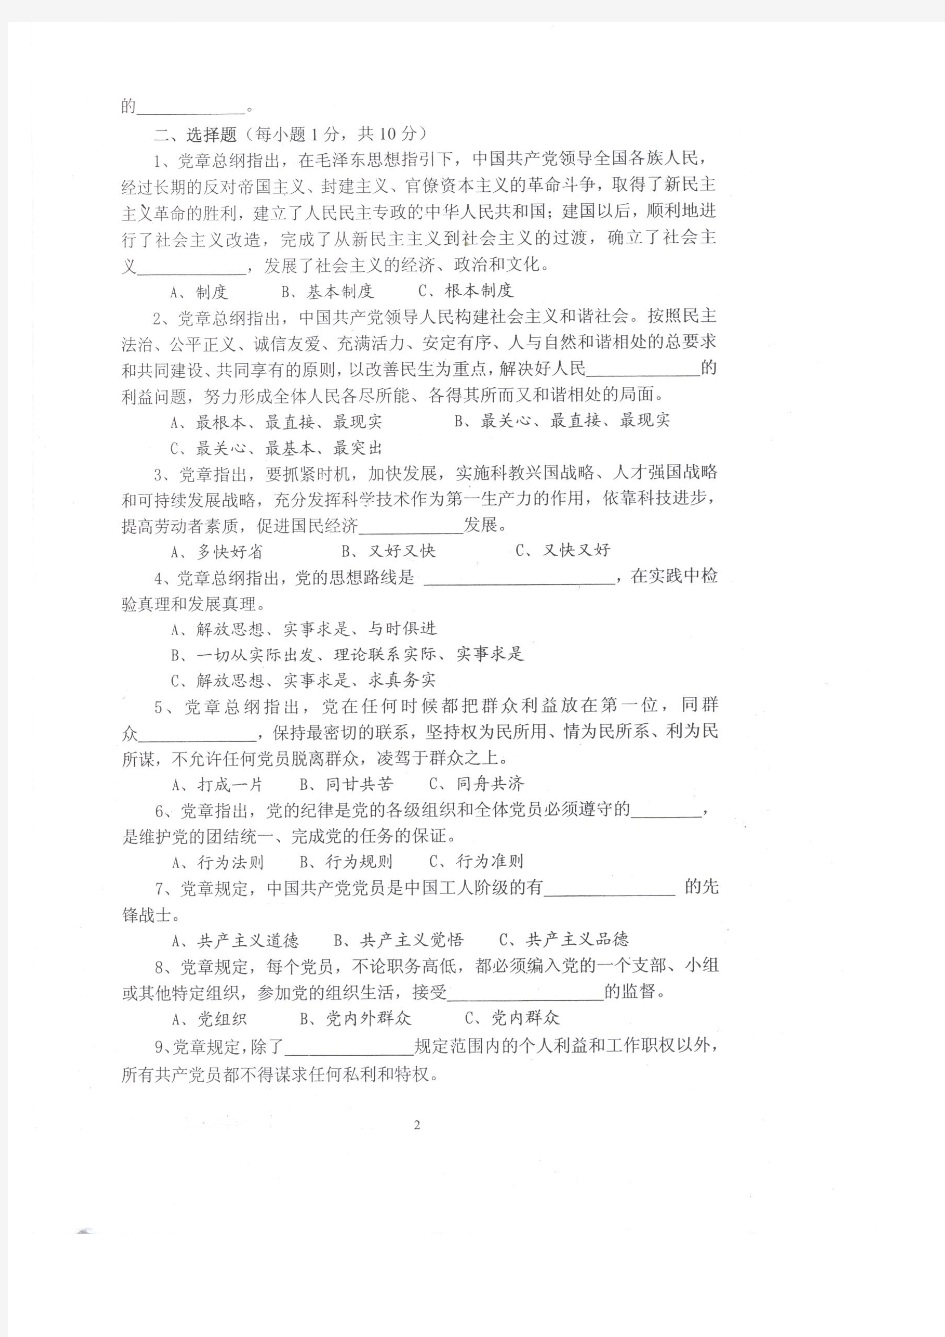 武汉大学第44期党校结业考试试卷及答案